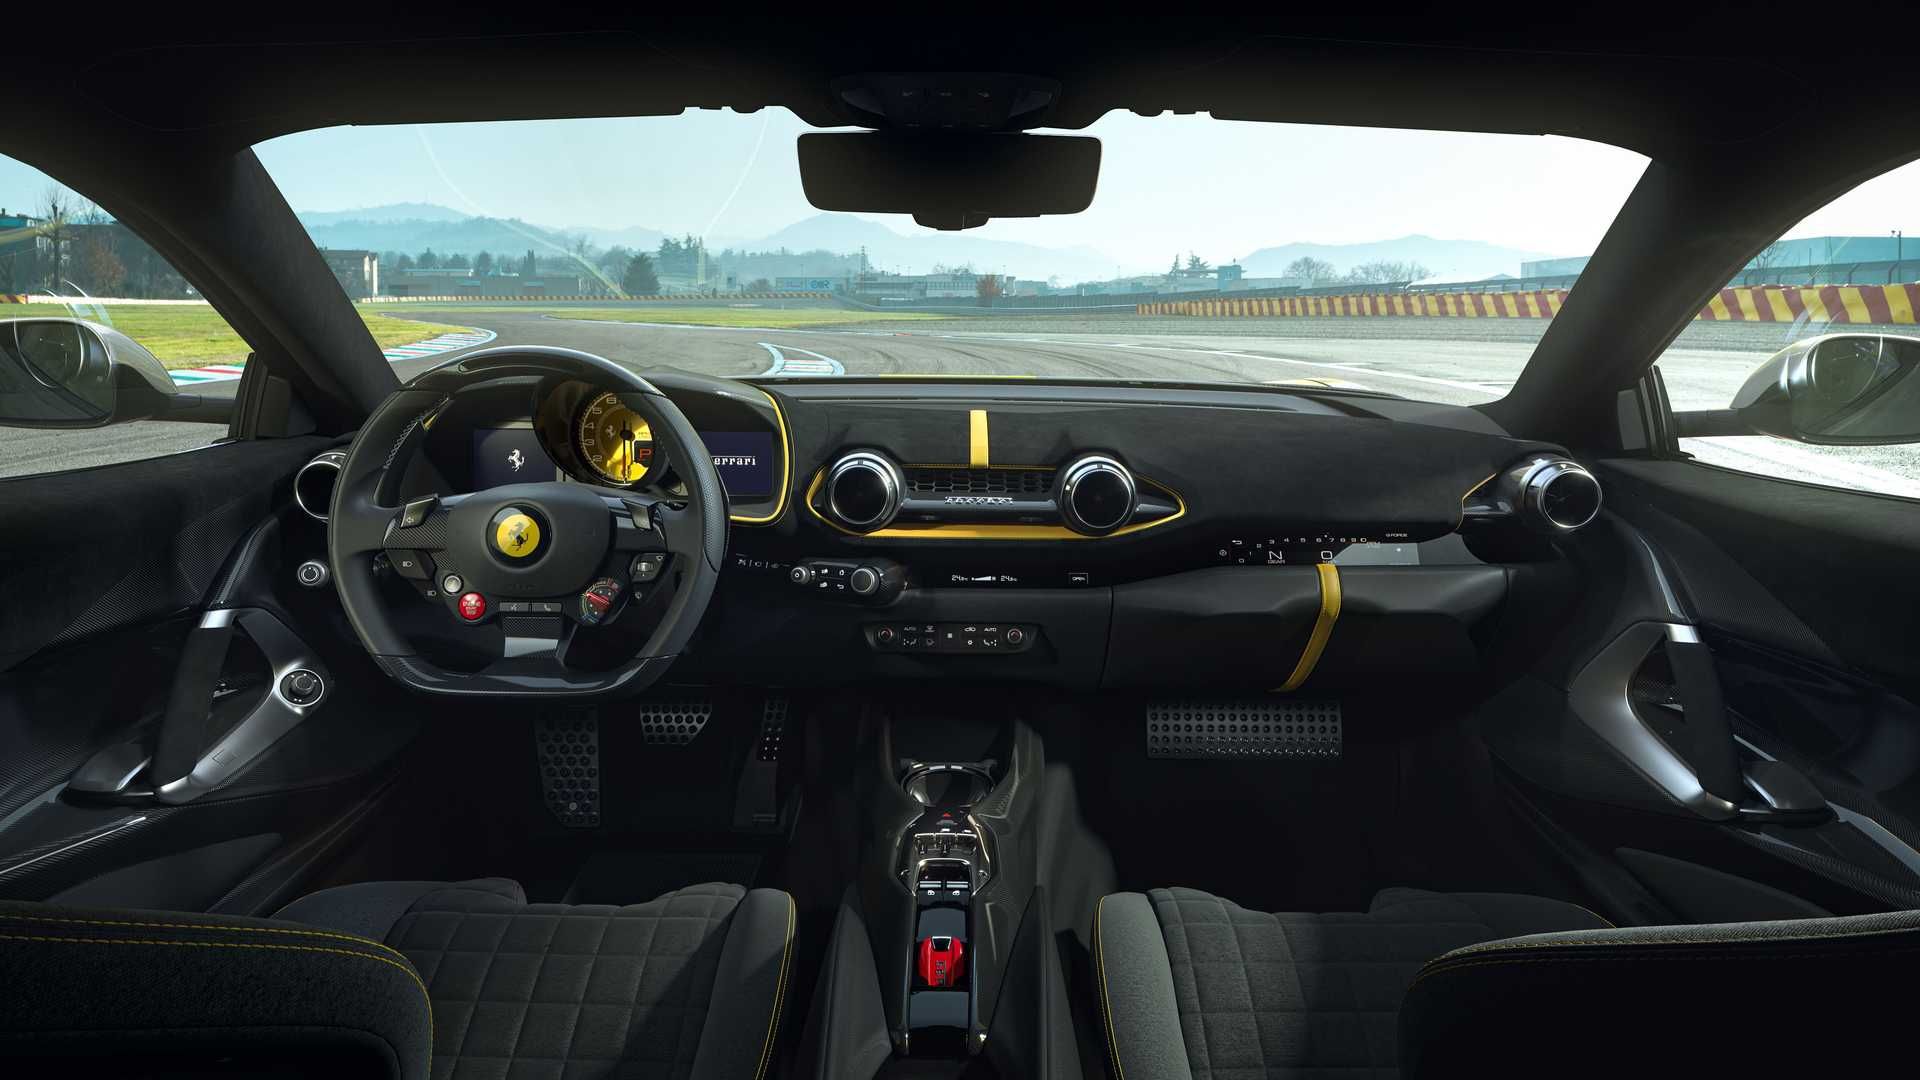 مرجع متخصصين ايران Ferrari 812 Competizione  فراري 812 كامپتزيونه نماي داخلي